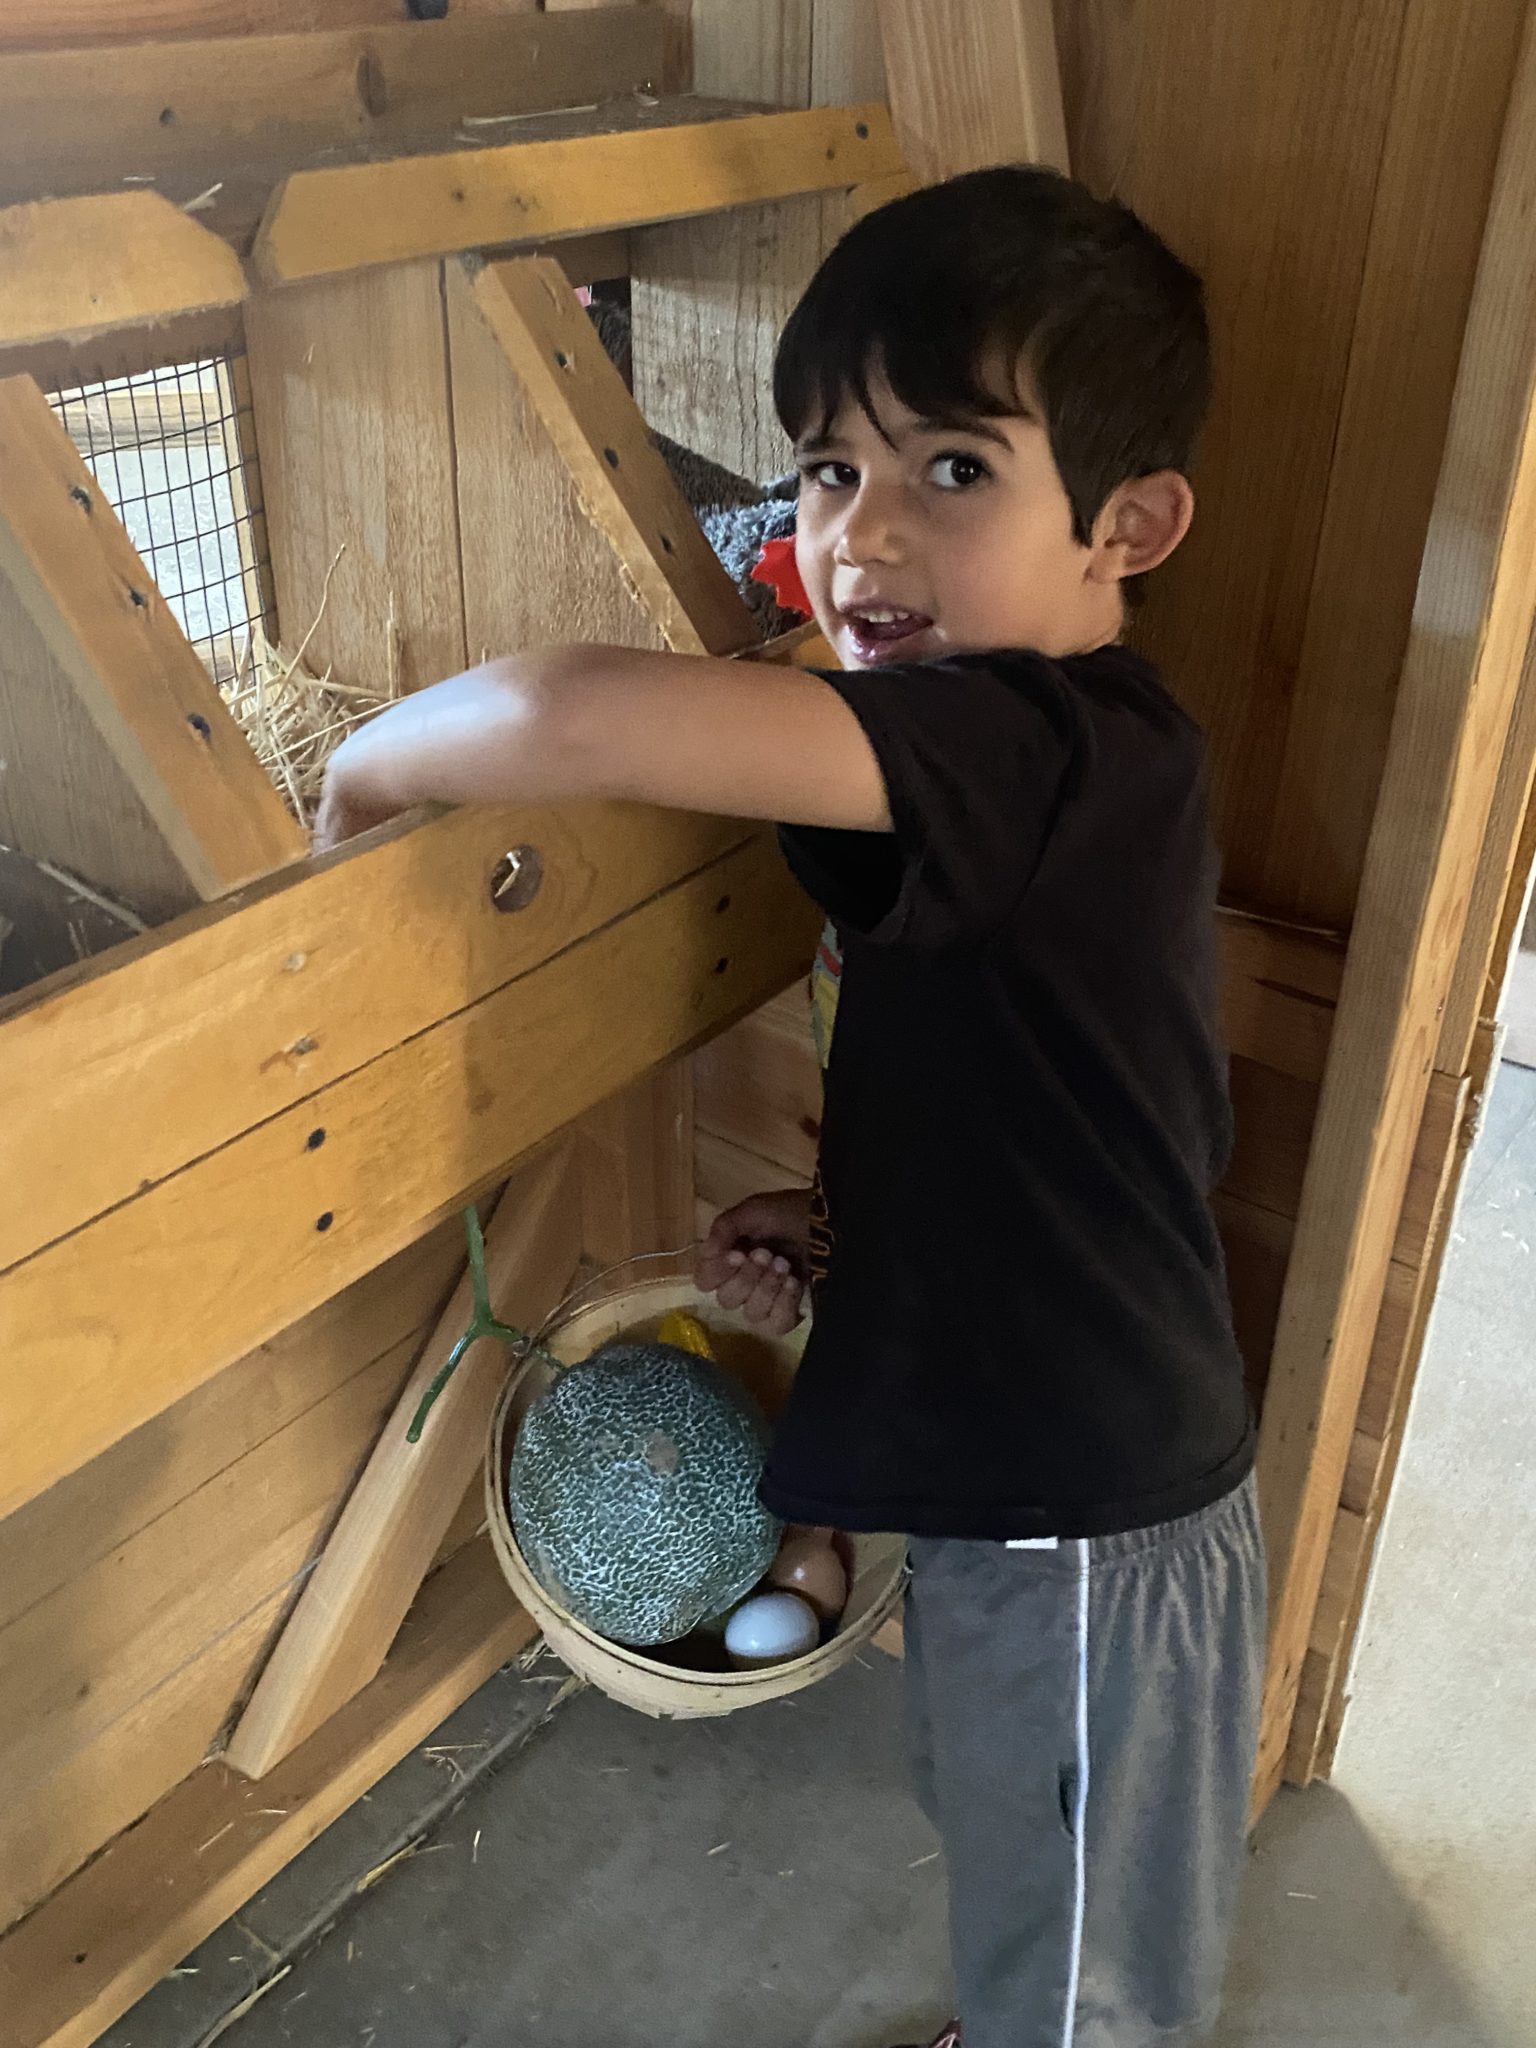 child reaching into chicken coop exhibit